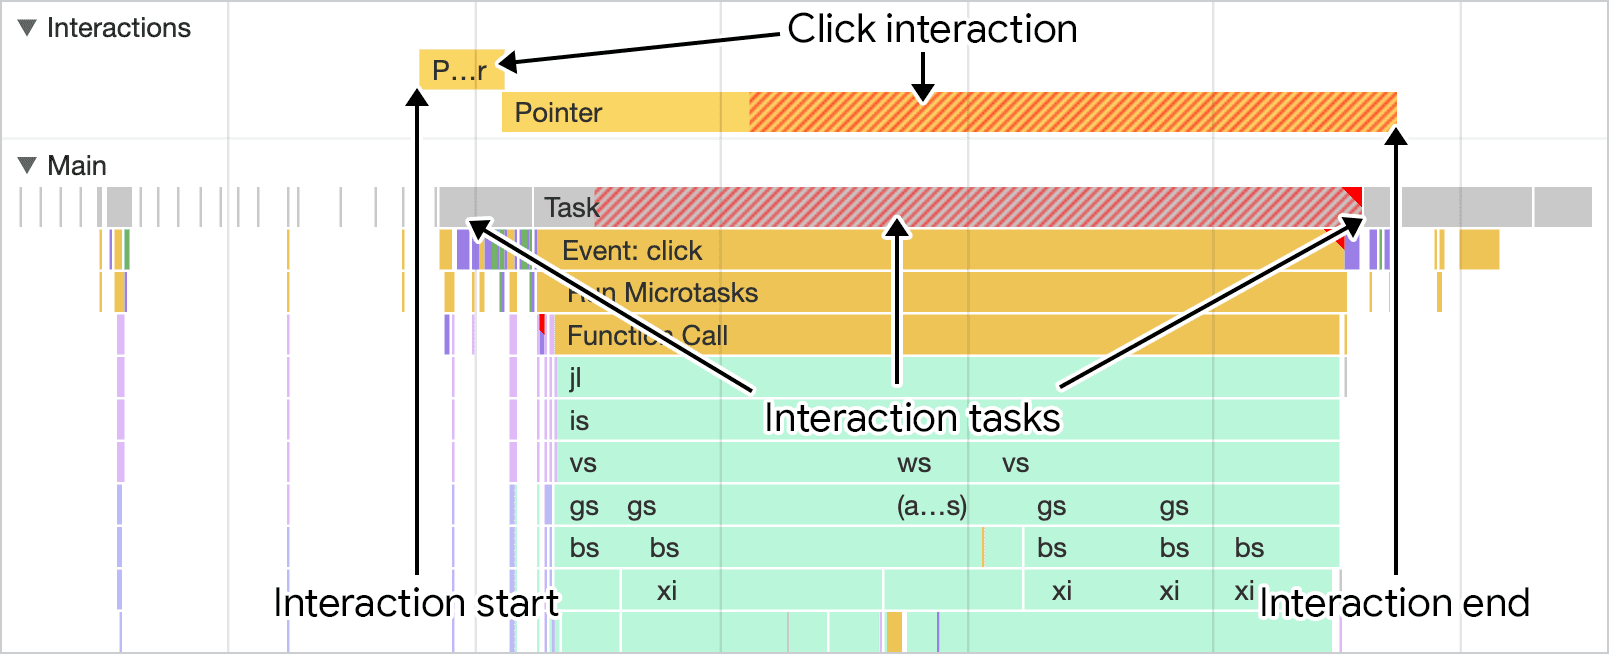 Zrzut ekranu przedstawiający interakcję na panelu wydajności Narzędzi deweloperskich w Chrome. Ścieżka interakcji nad ścieżką głównego wątku pokazuje czas trwania interakcji, który można połączyć z aktywnością w wątku głównym.